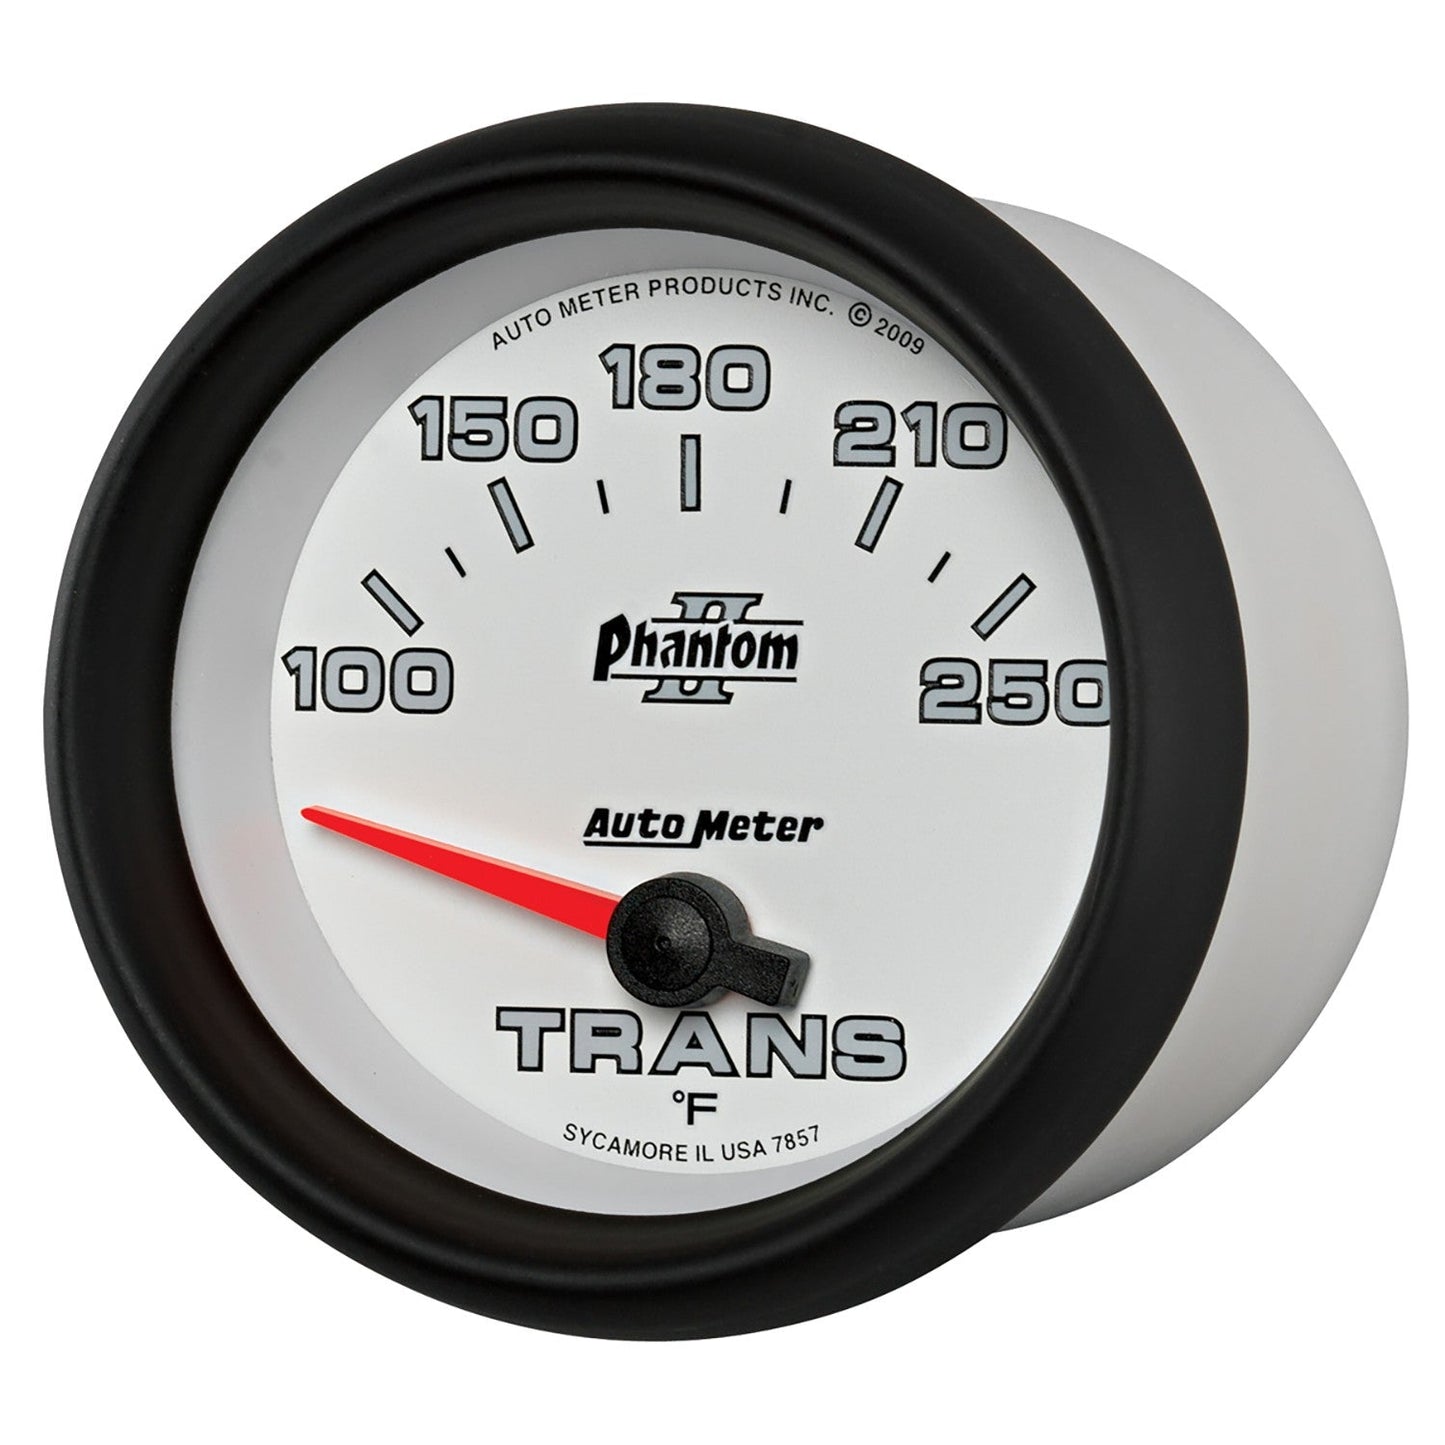 AutoMeter - TEMPERATURA DE TRANSMISIÓN DE 2-5/8", 100-250 °F, NÚCLEO DE AIRE, PHANTOM II (7857)